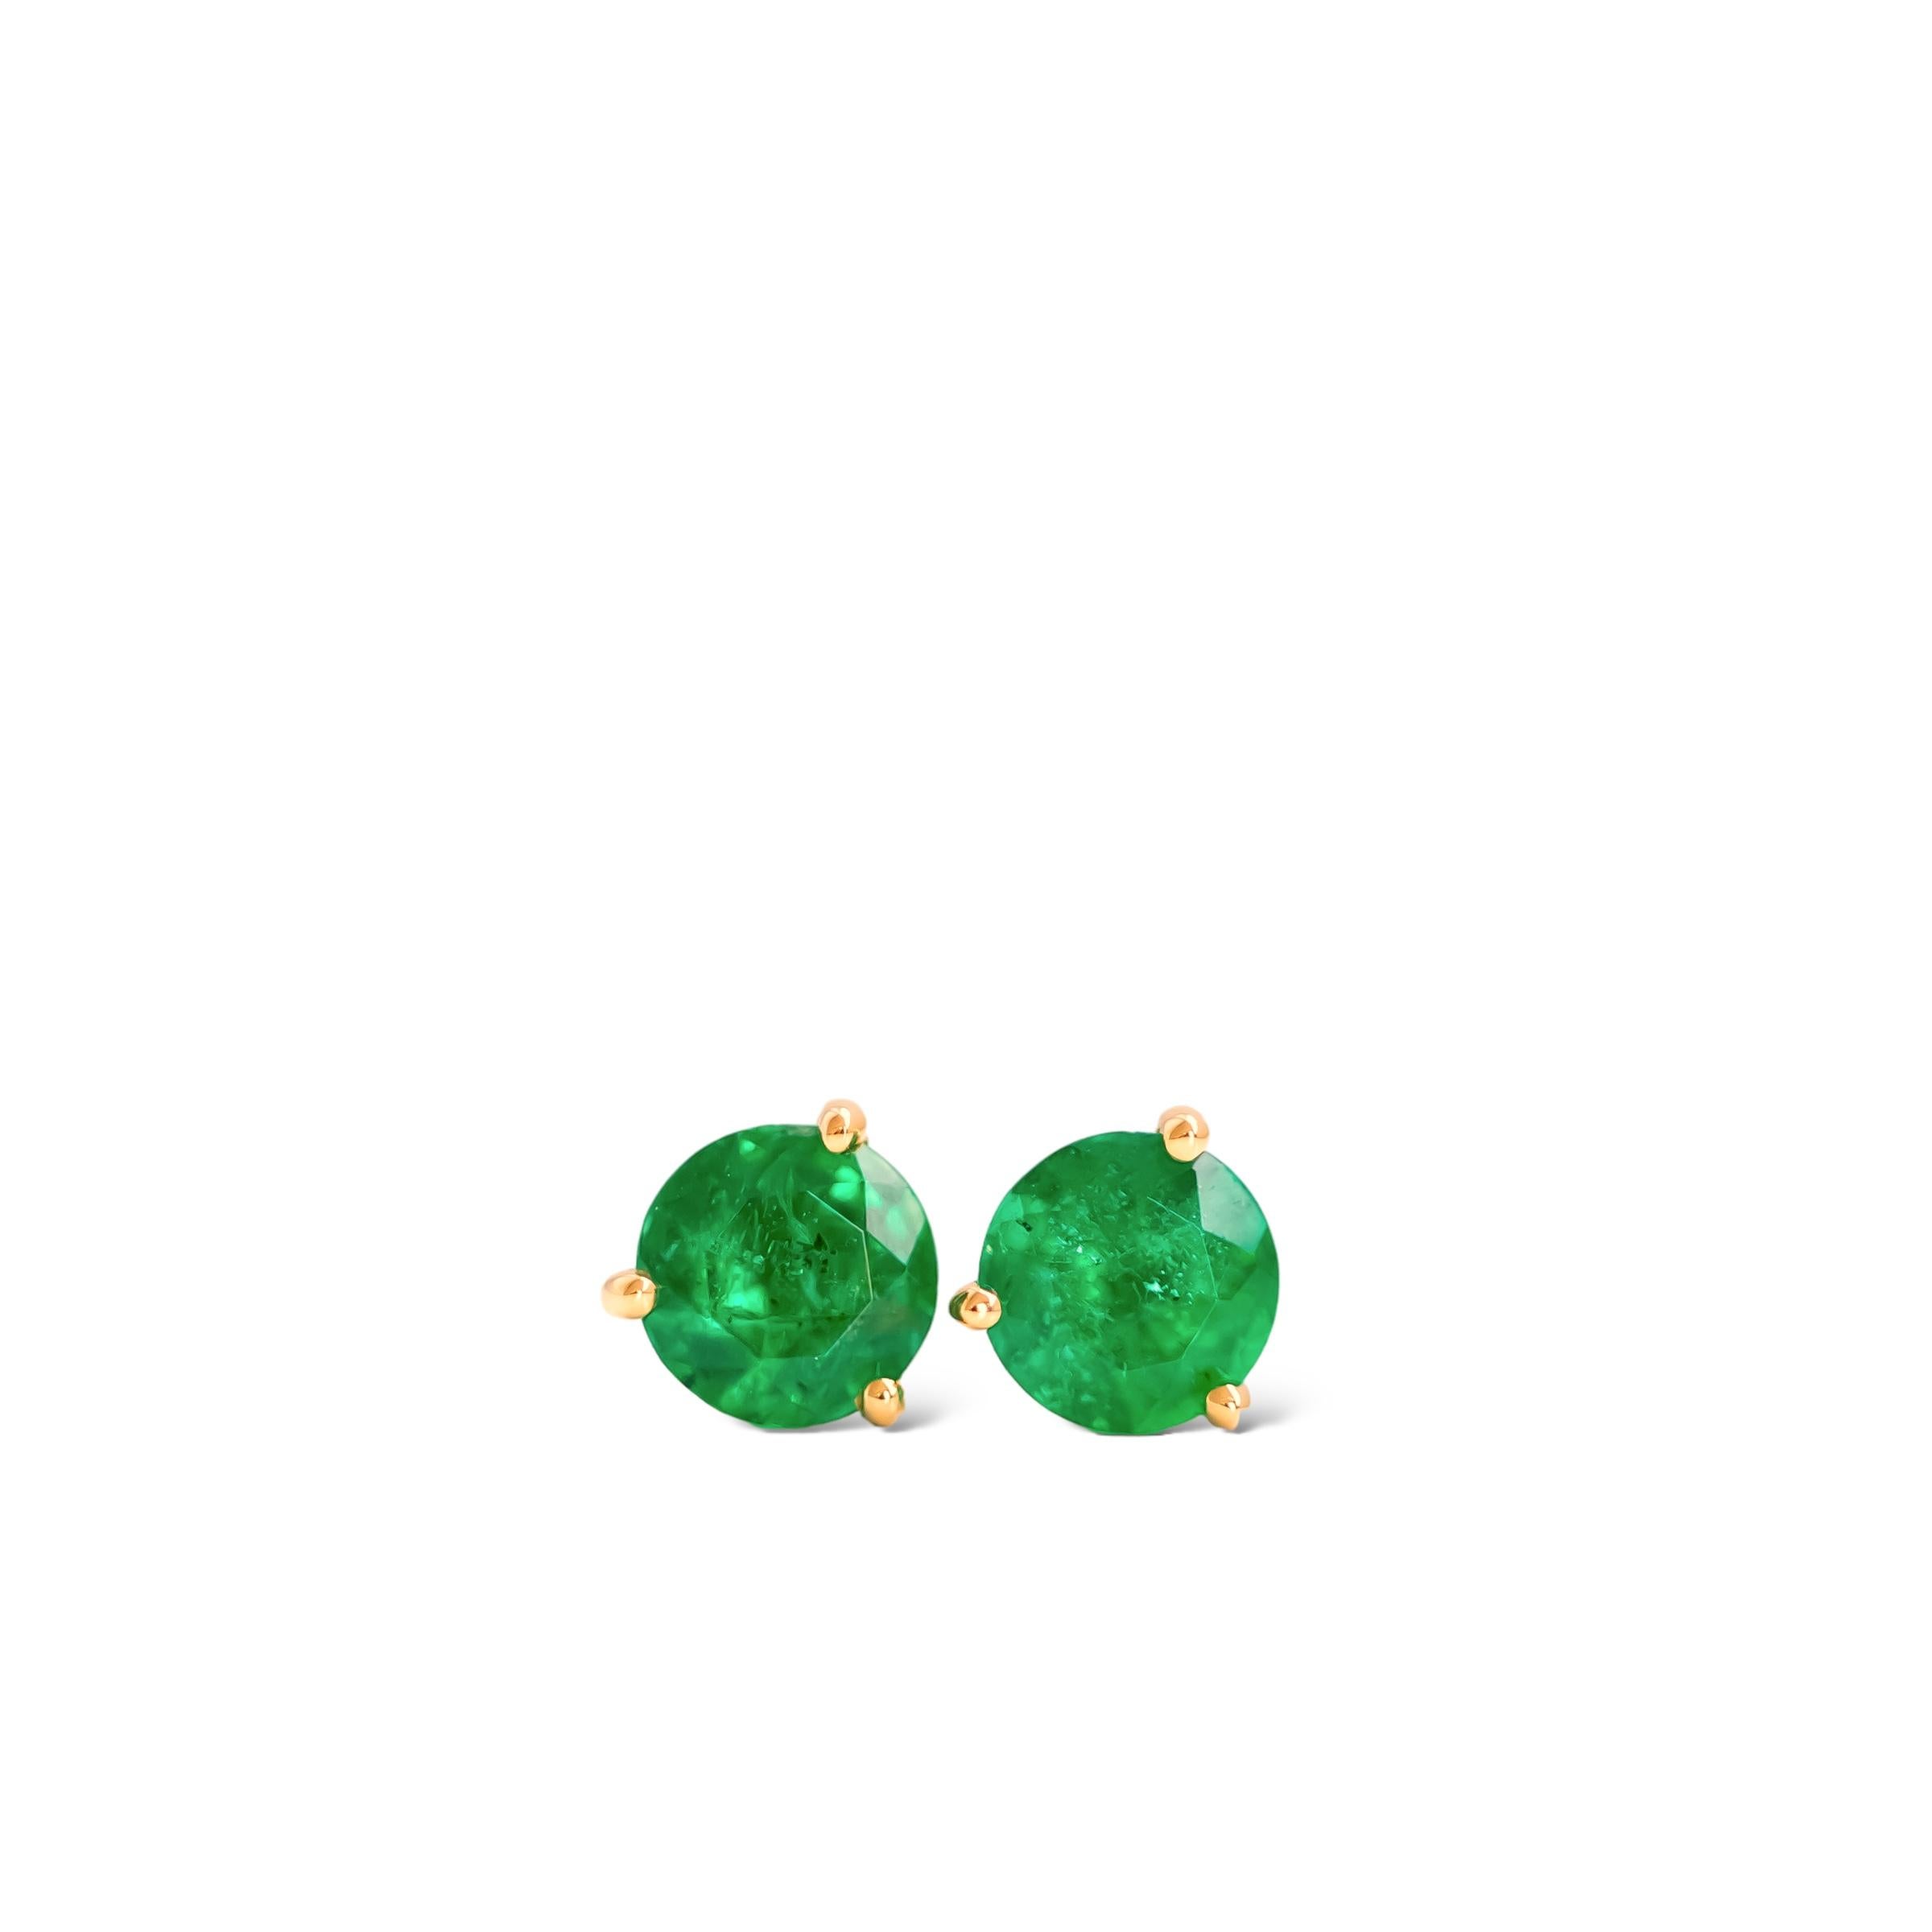 Superbes clous d'oreilles en émeraude verte ronde naturelle de 0,68ct sertis dans un luxueux or jaune 18k.

Ces magnifiques émeraudes parfaitement assorties proviennent de Zambie et mesurent 4,5 mm chacune. La couleur émeraude est un vert vif. Les